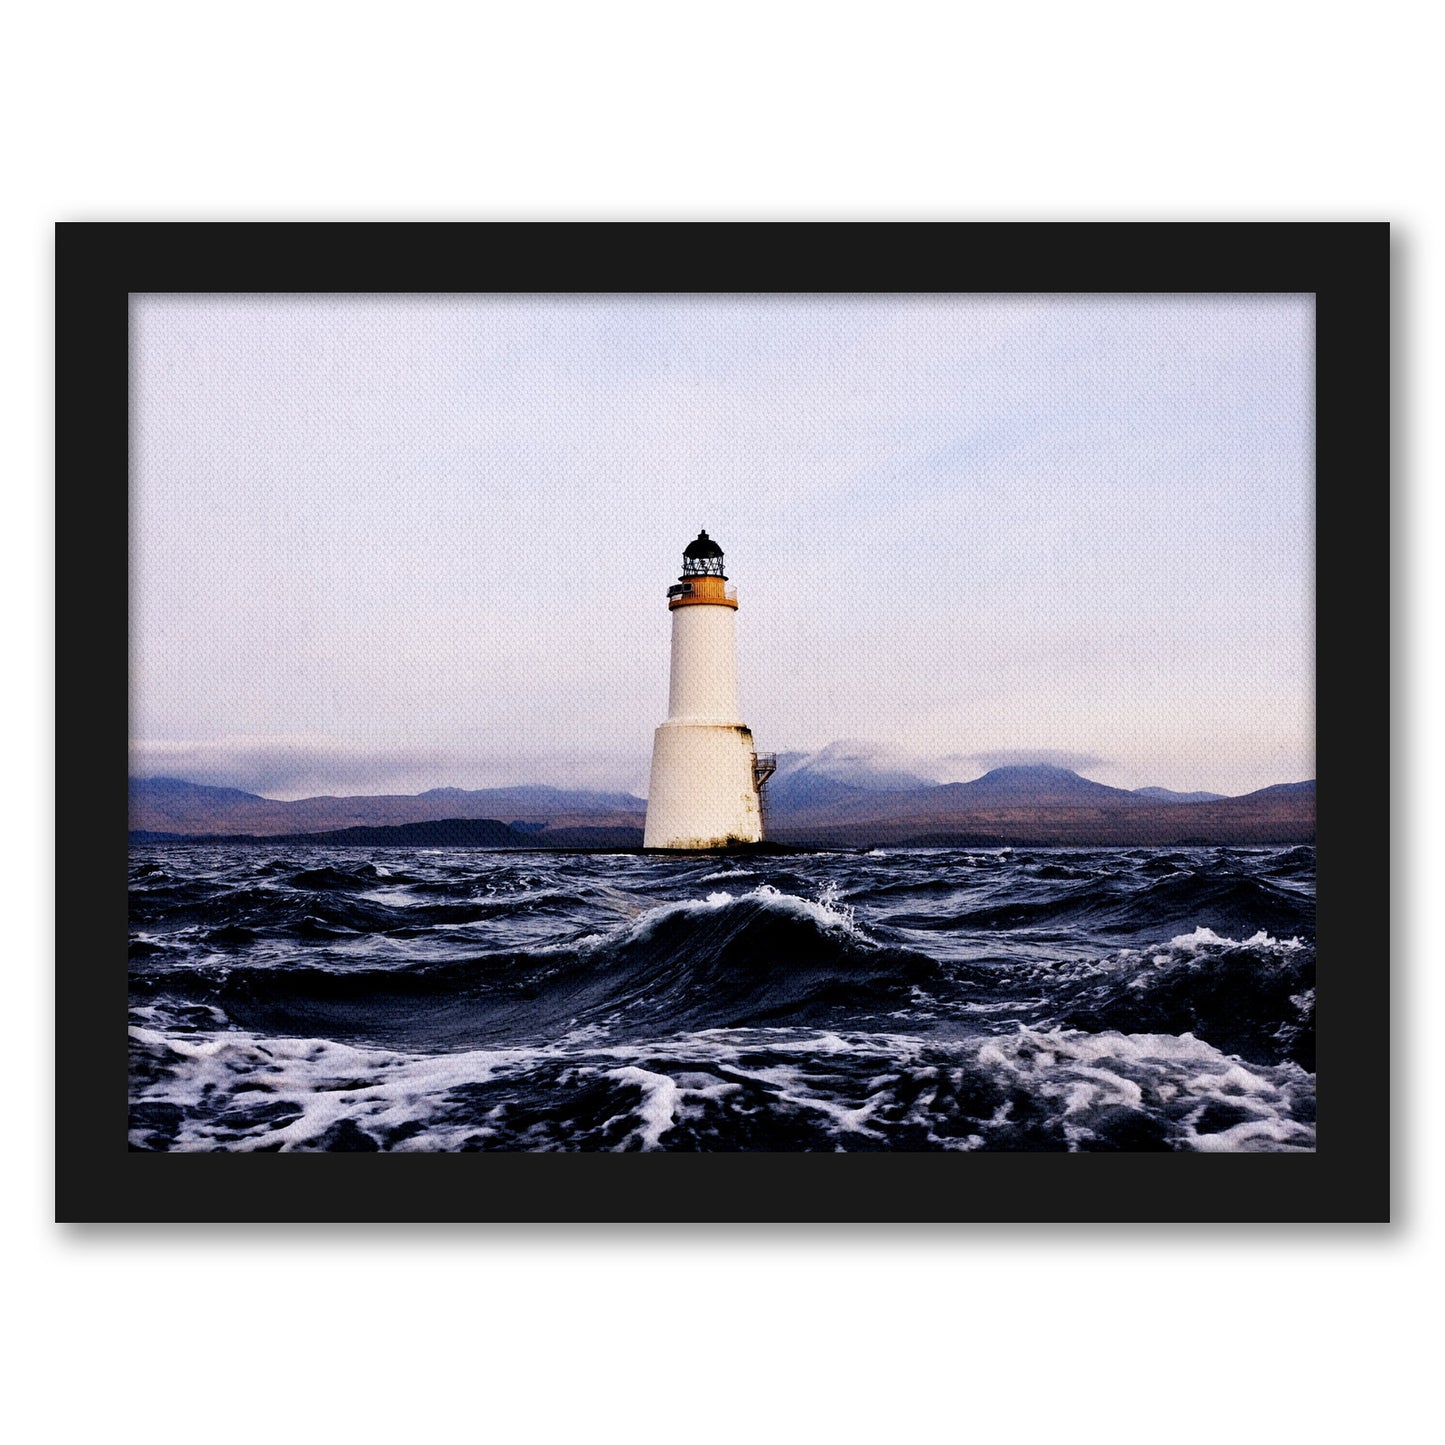 Lighthouse 2 By Nuada - Framed Print